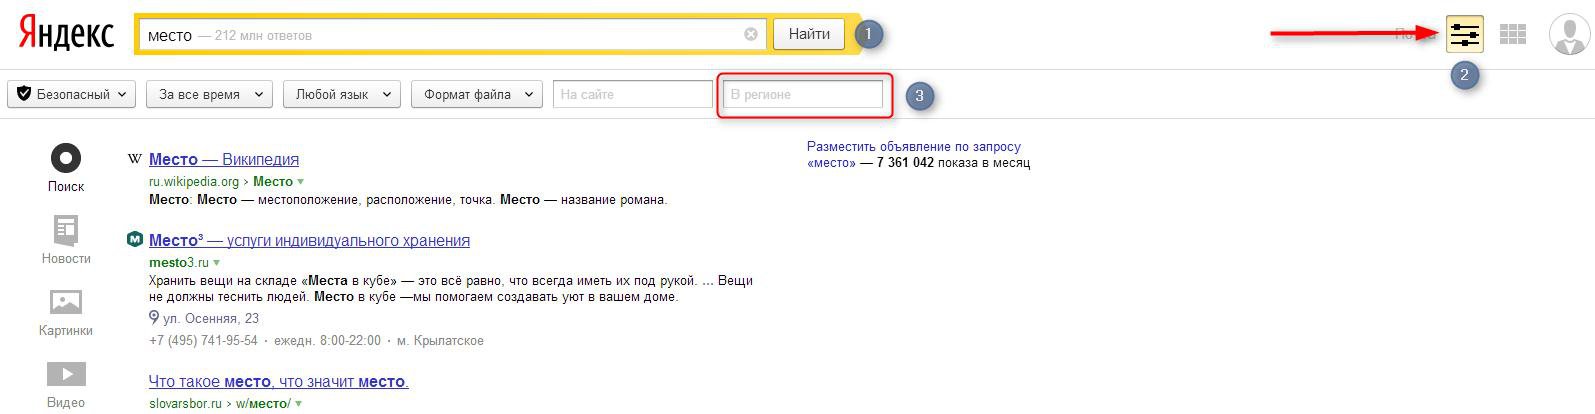 Изменения города на главной странице Яндекса